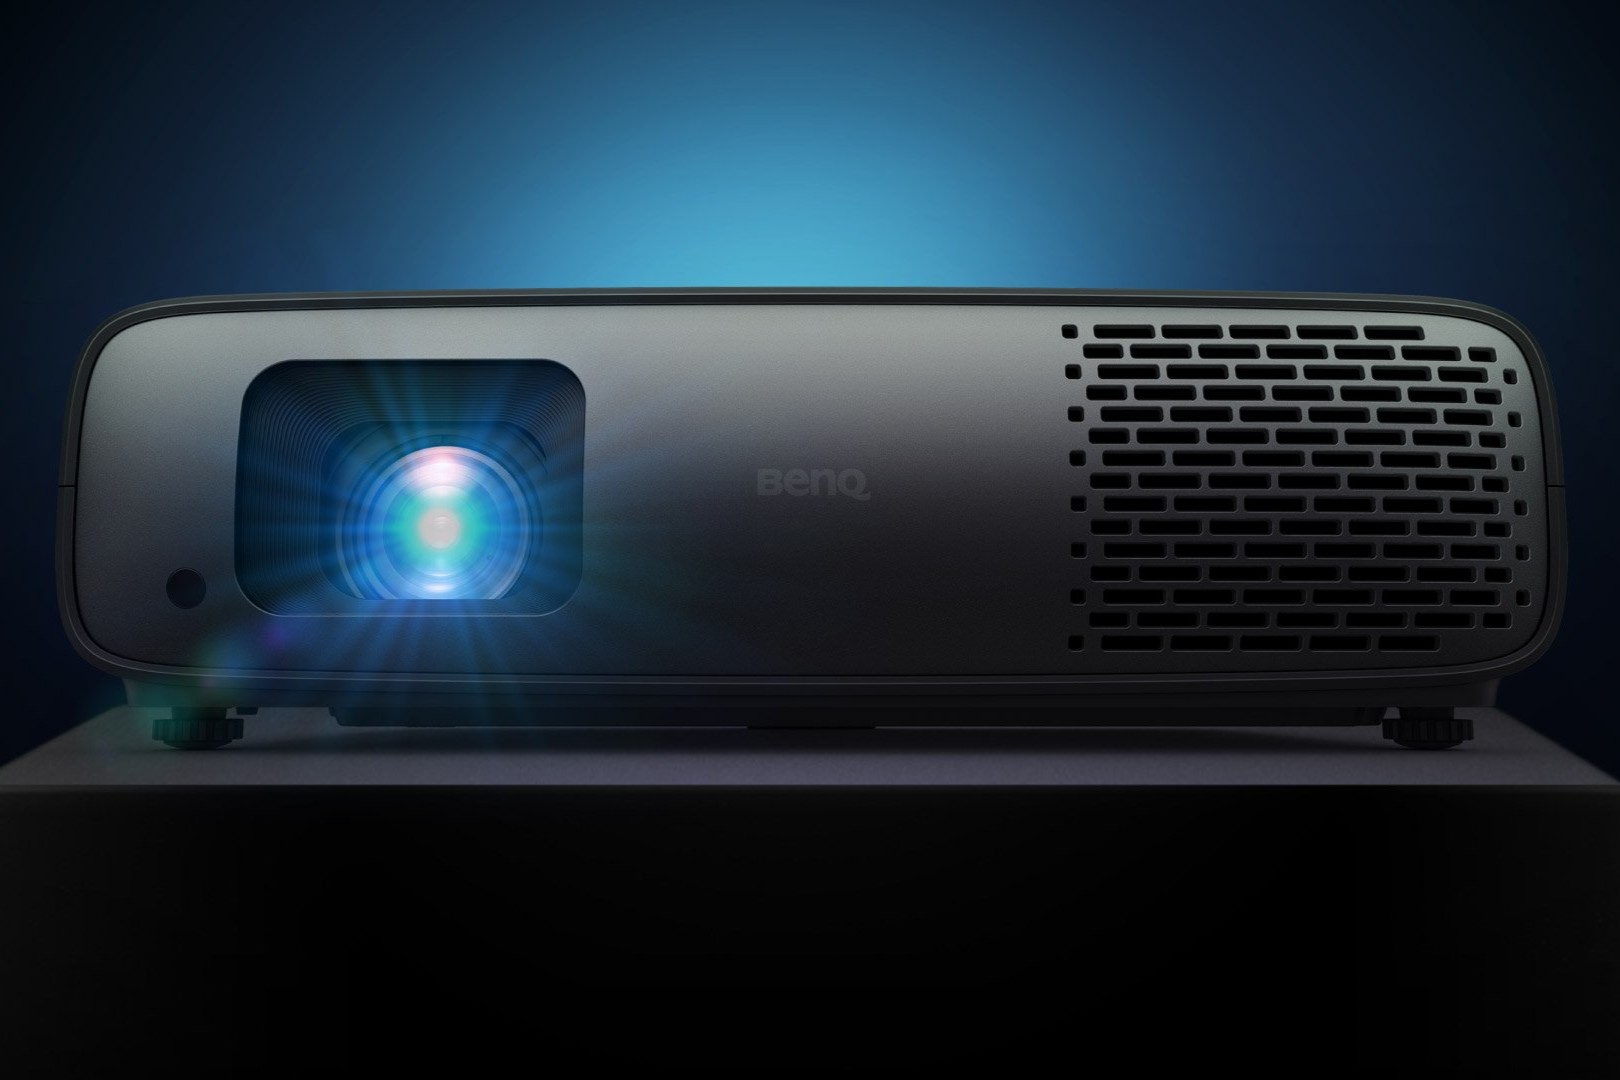 BenQ launches three new projectors at CES 2023 